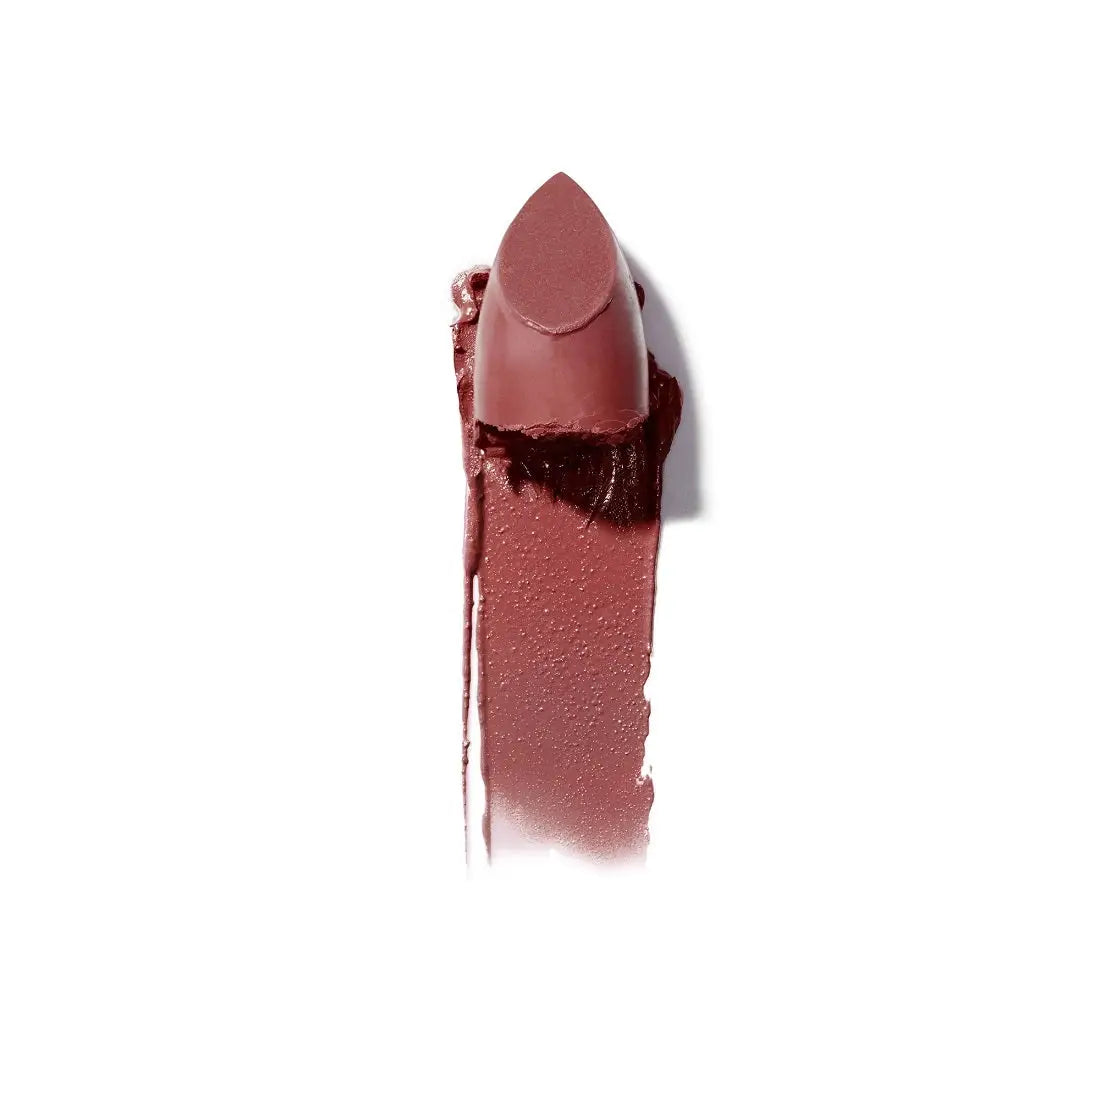 Ilia Beauty Color Block Lipstick 4g - Rococco Free Shipping 